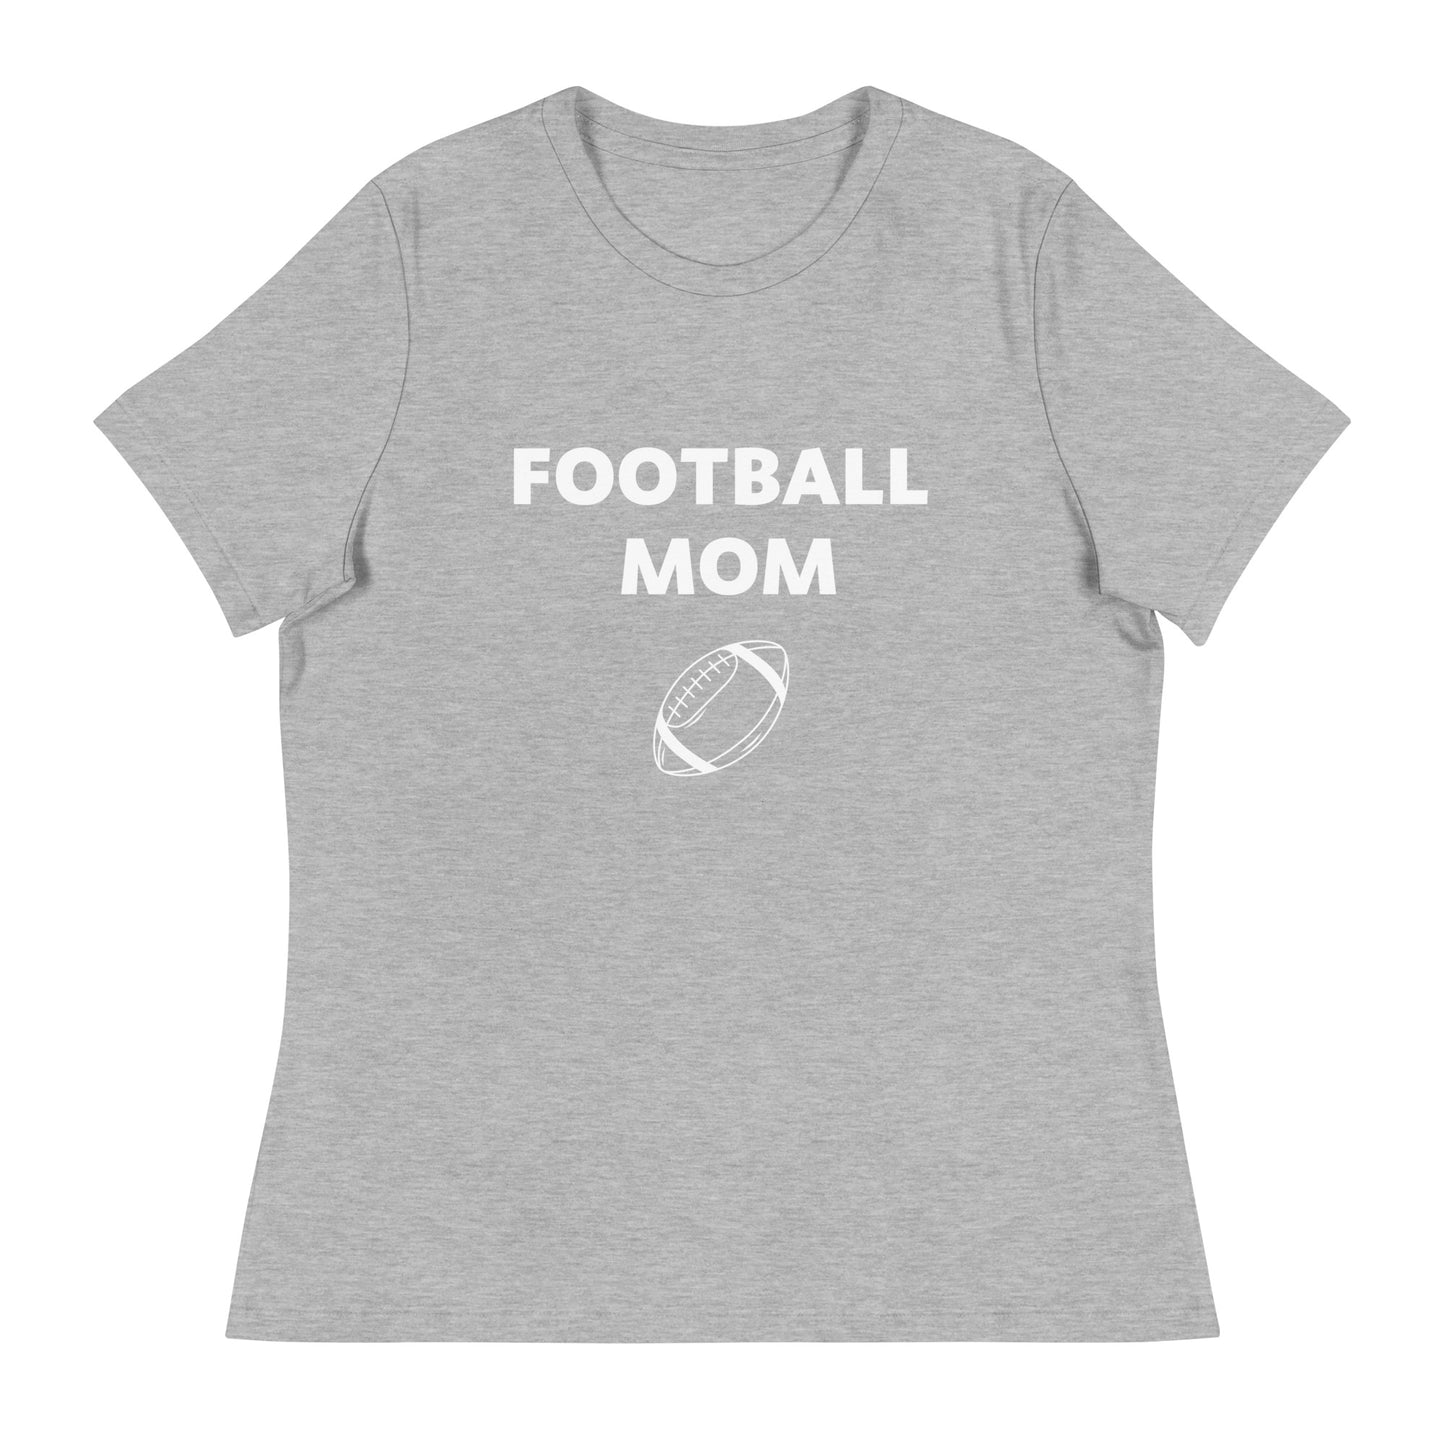 Football Mom Printed T-Shirt